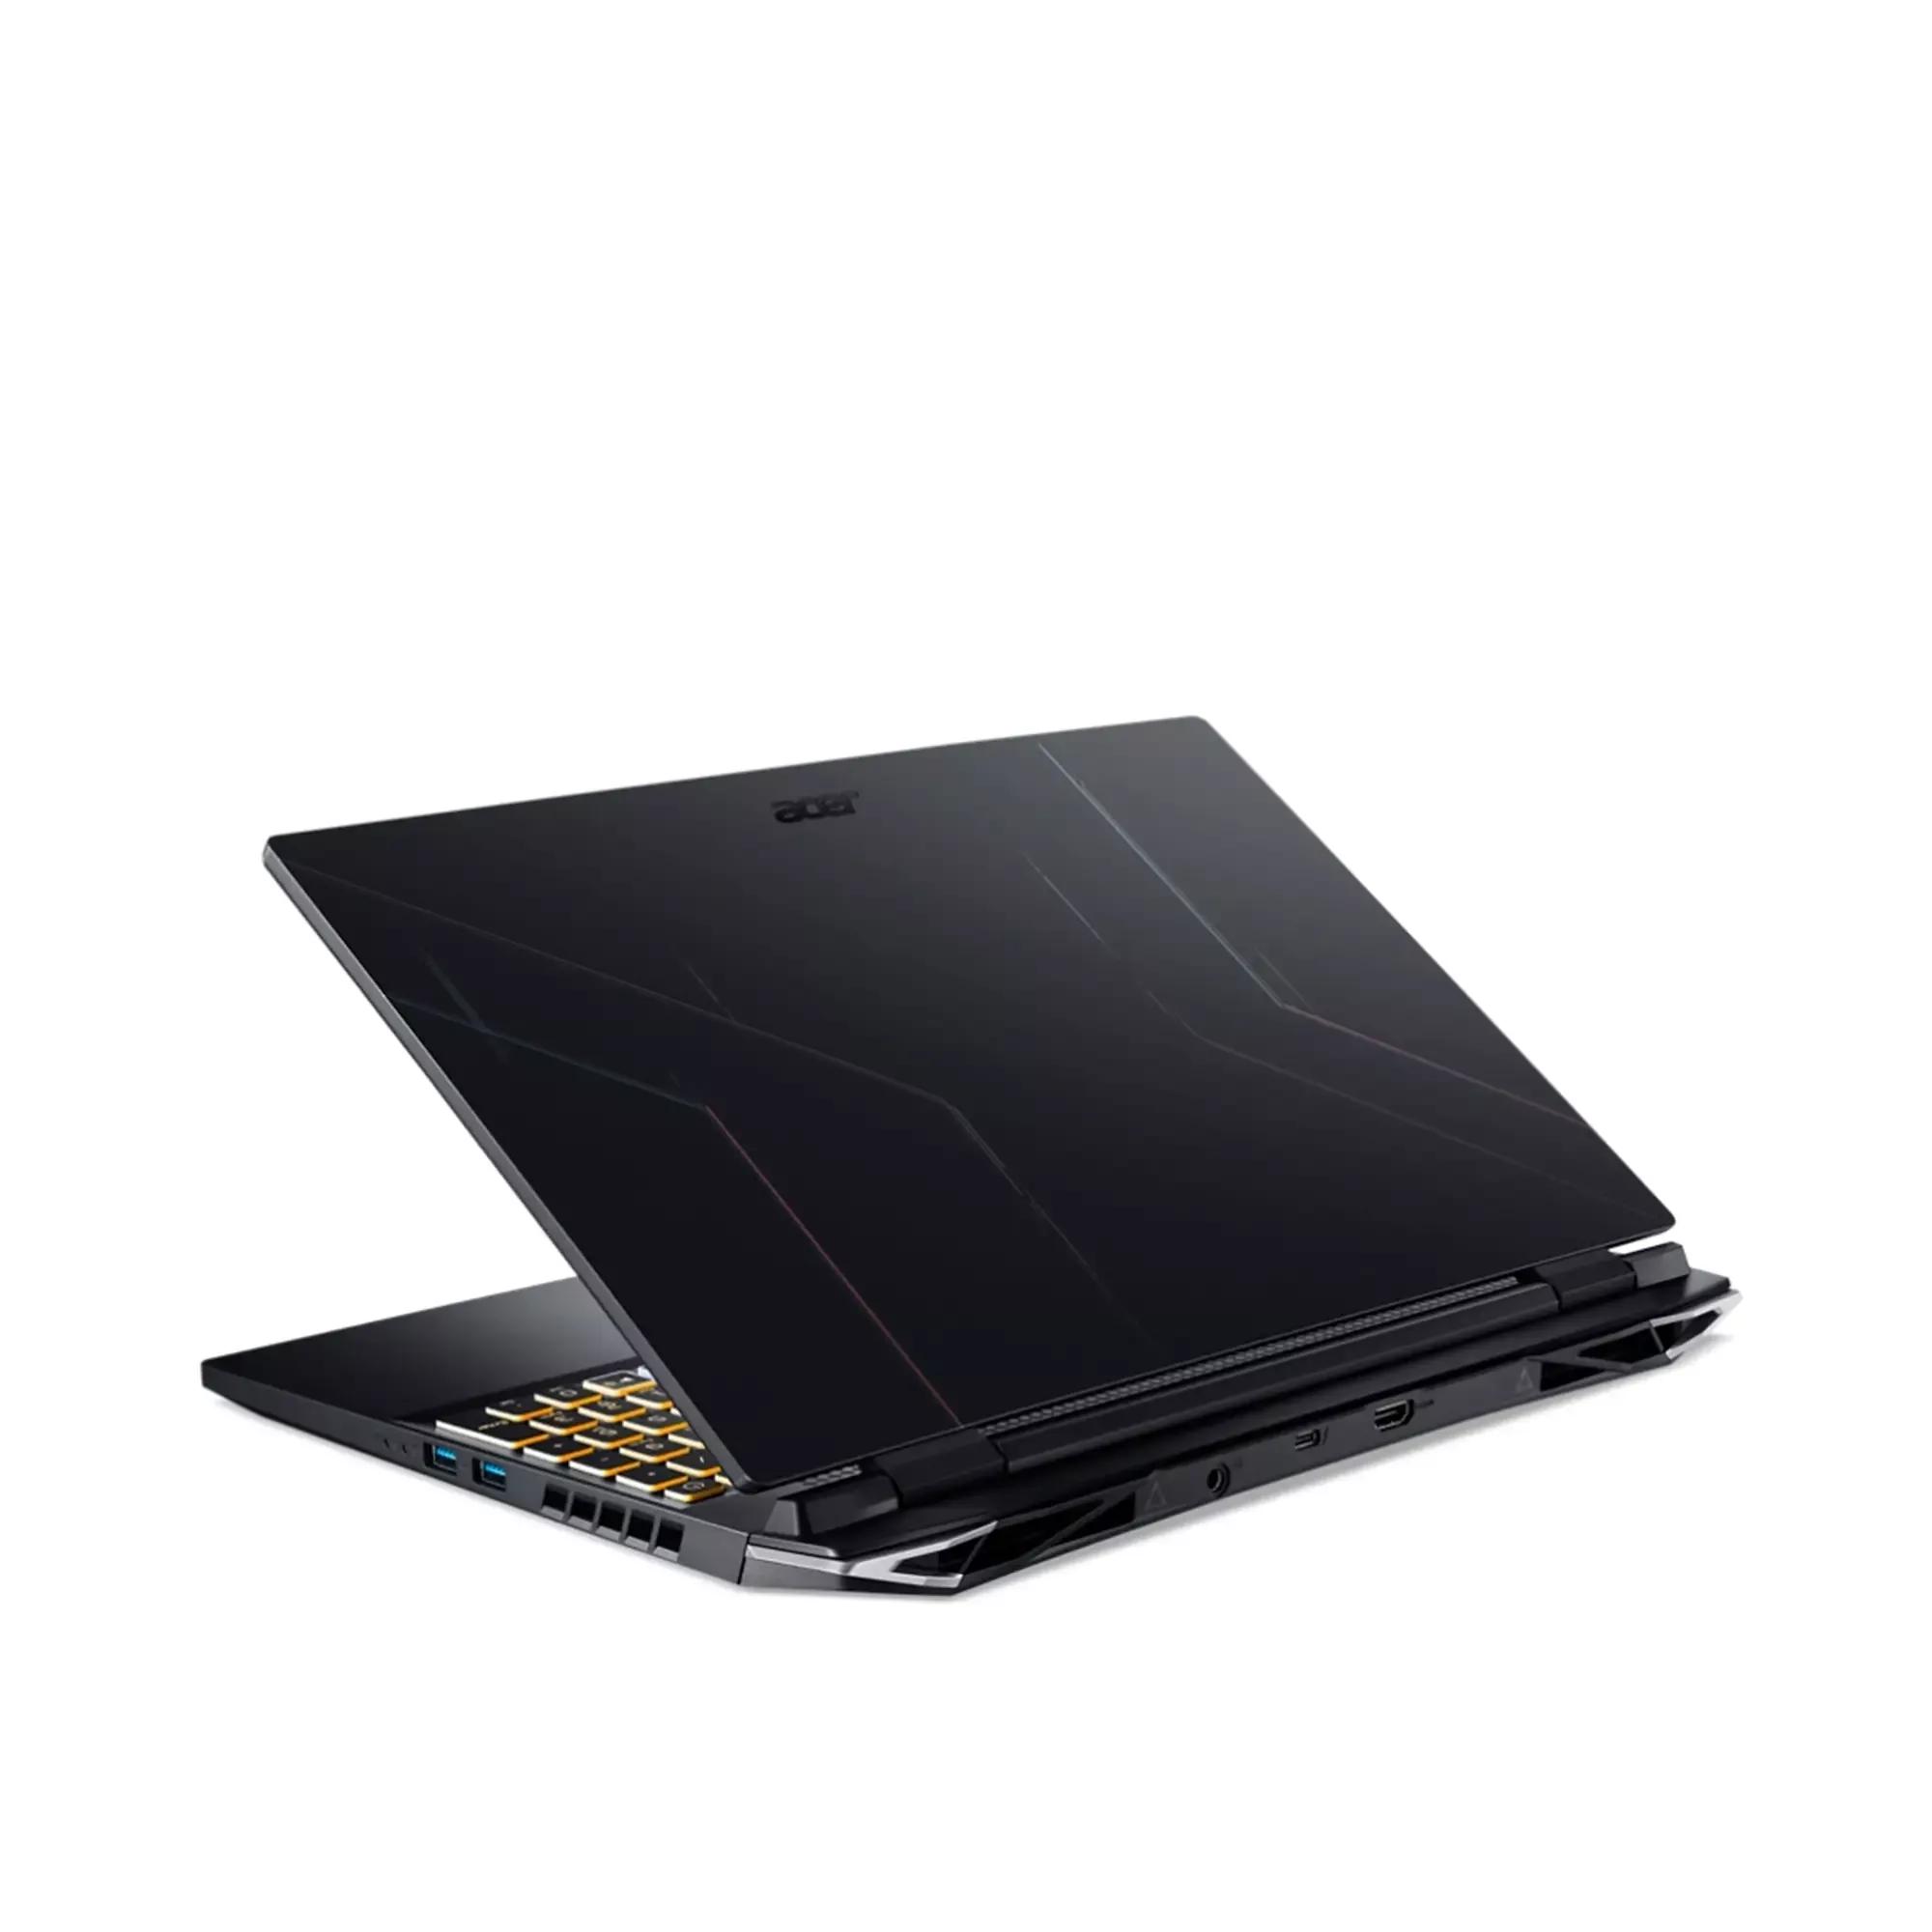 Acer Nitro 5 2022 i5 12500H | RTX 3050 | 16GB RAM | 512GB SSD | 15.6" FHD 144Hz display | RGB Keyboard | 1 Year Warranty